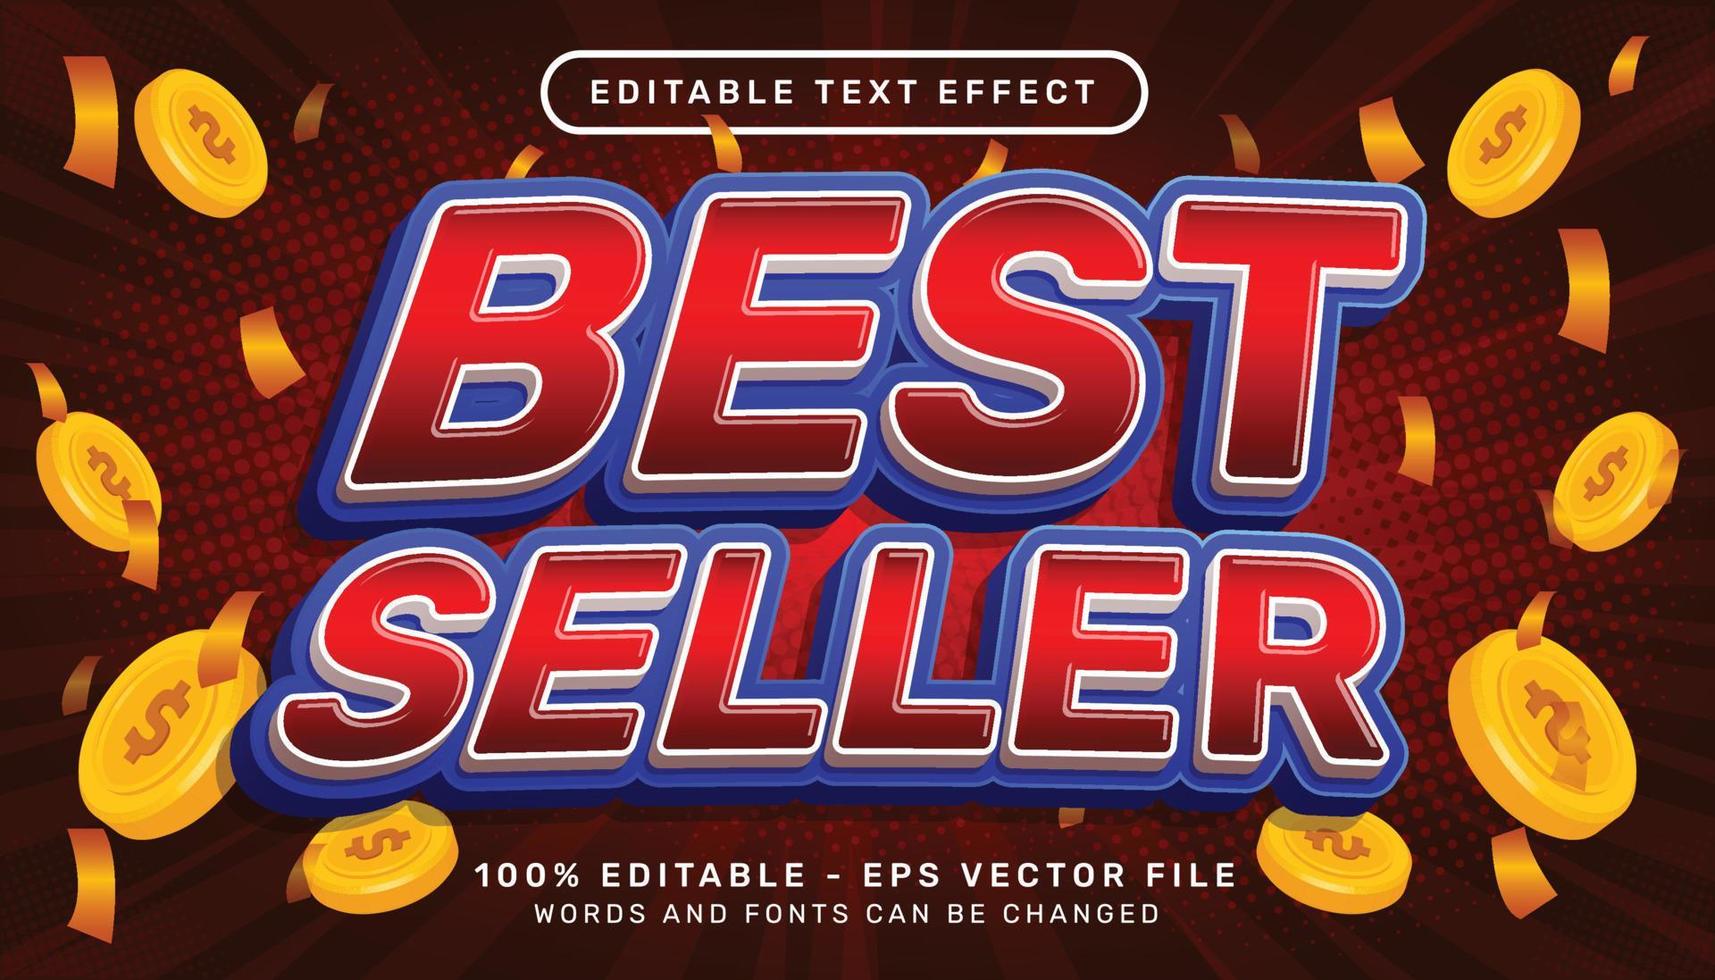 Bestseller 3d bearbeitbare Texteffektvorlage vektor